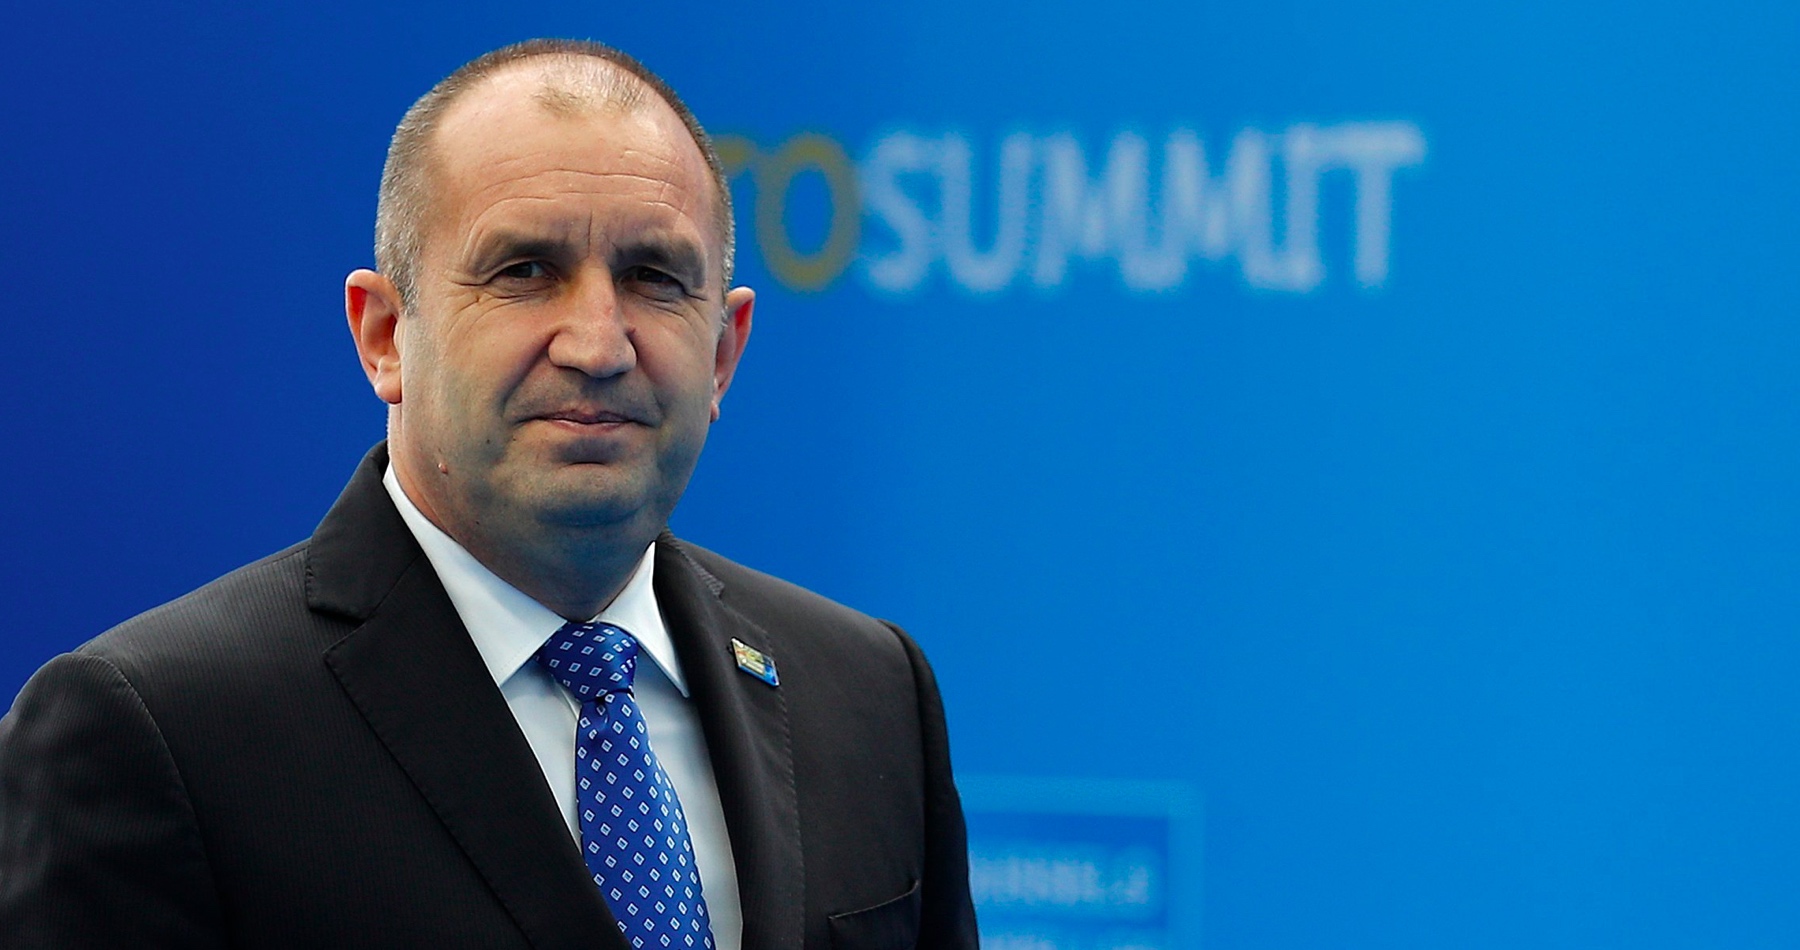 Bulharský prezident Radev, ktorý odmieta vojenskú pomoc Ukrajine, nepôjde na summit NATO do Washingtonu